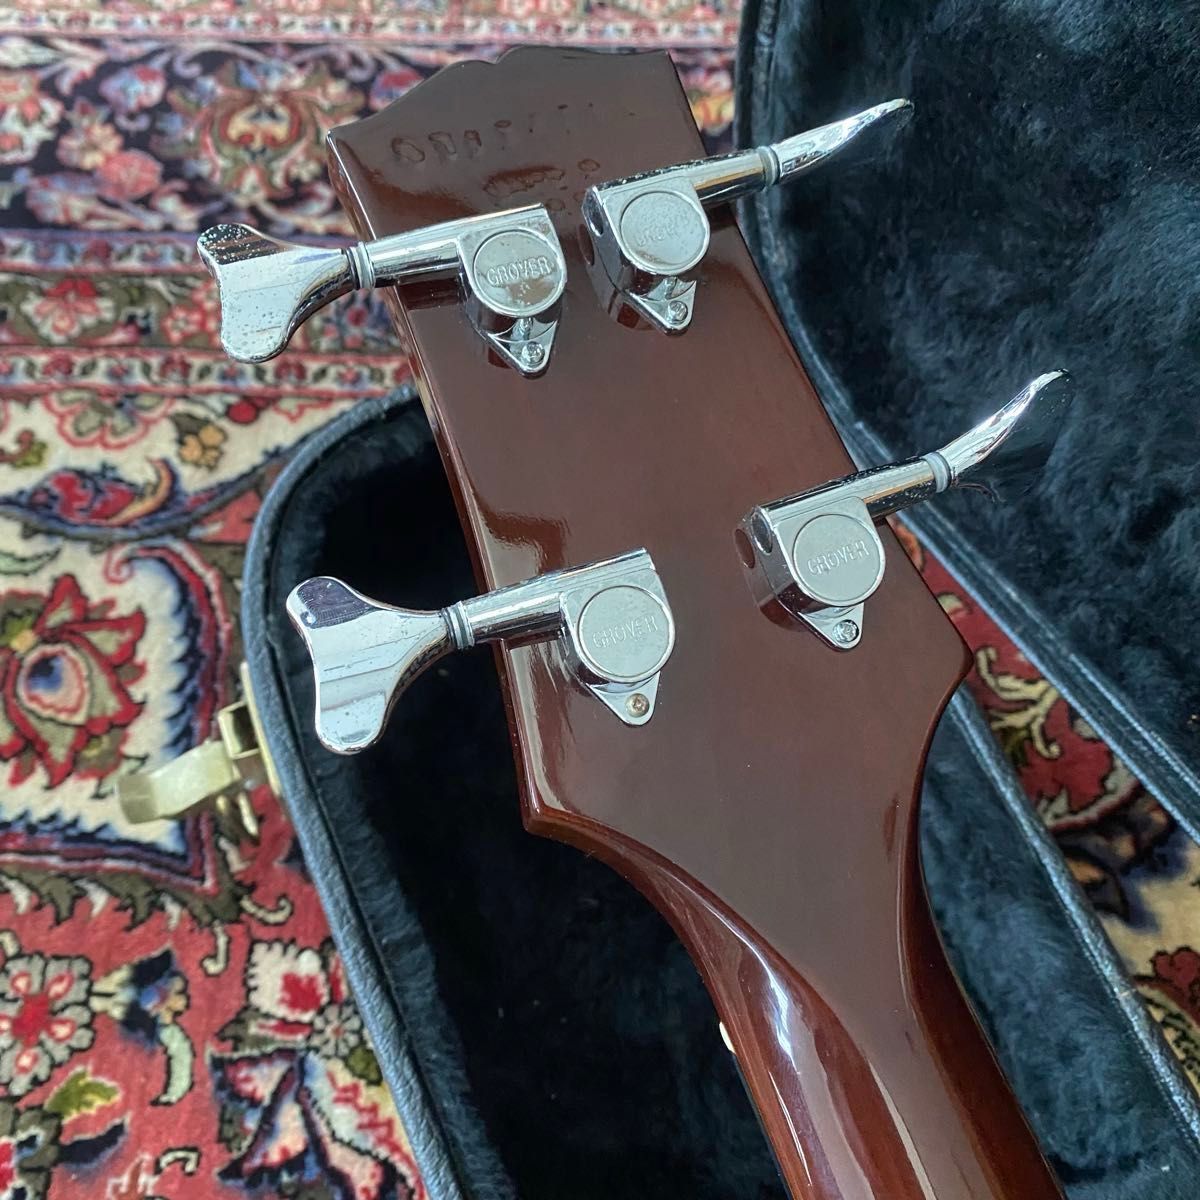 美品 Gibson Les Paul Standard Bass LPB-3 Premium Plus ギブソン レスポールベース